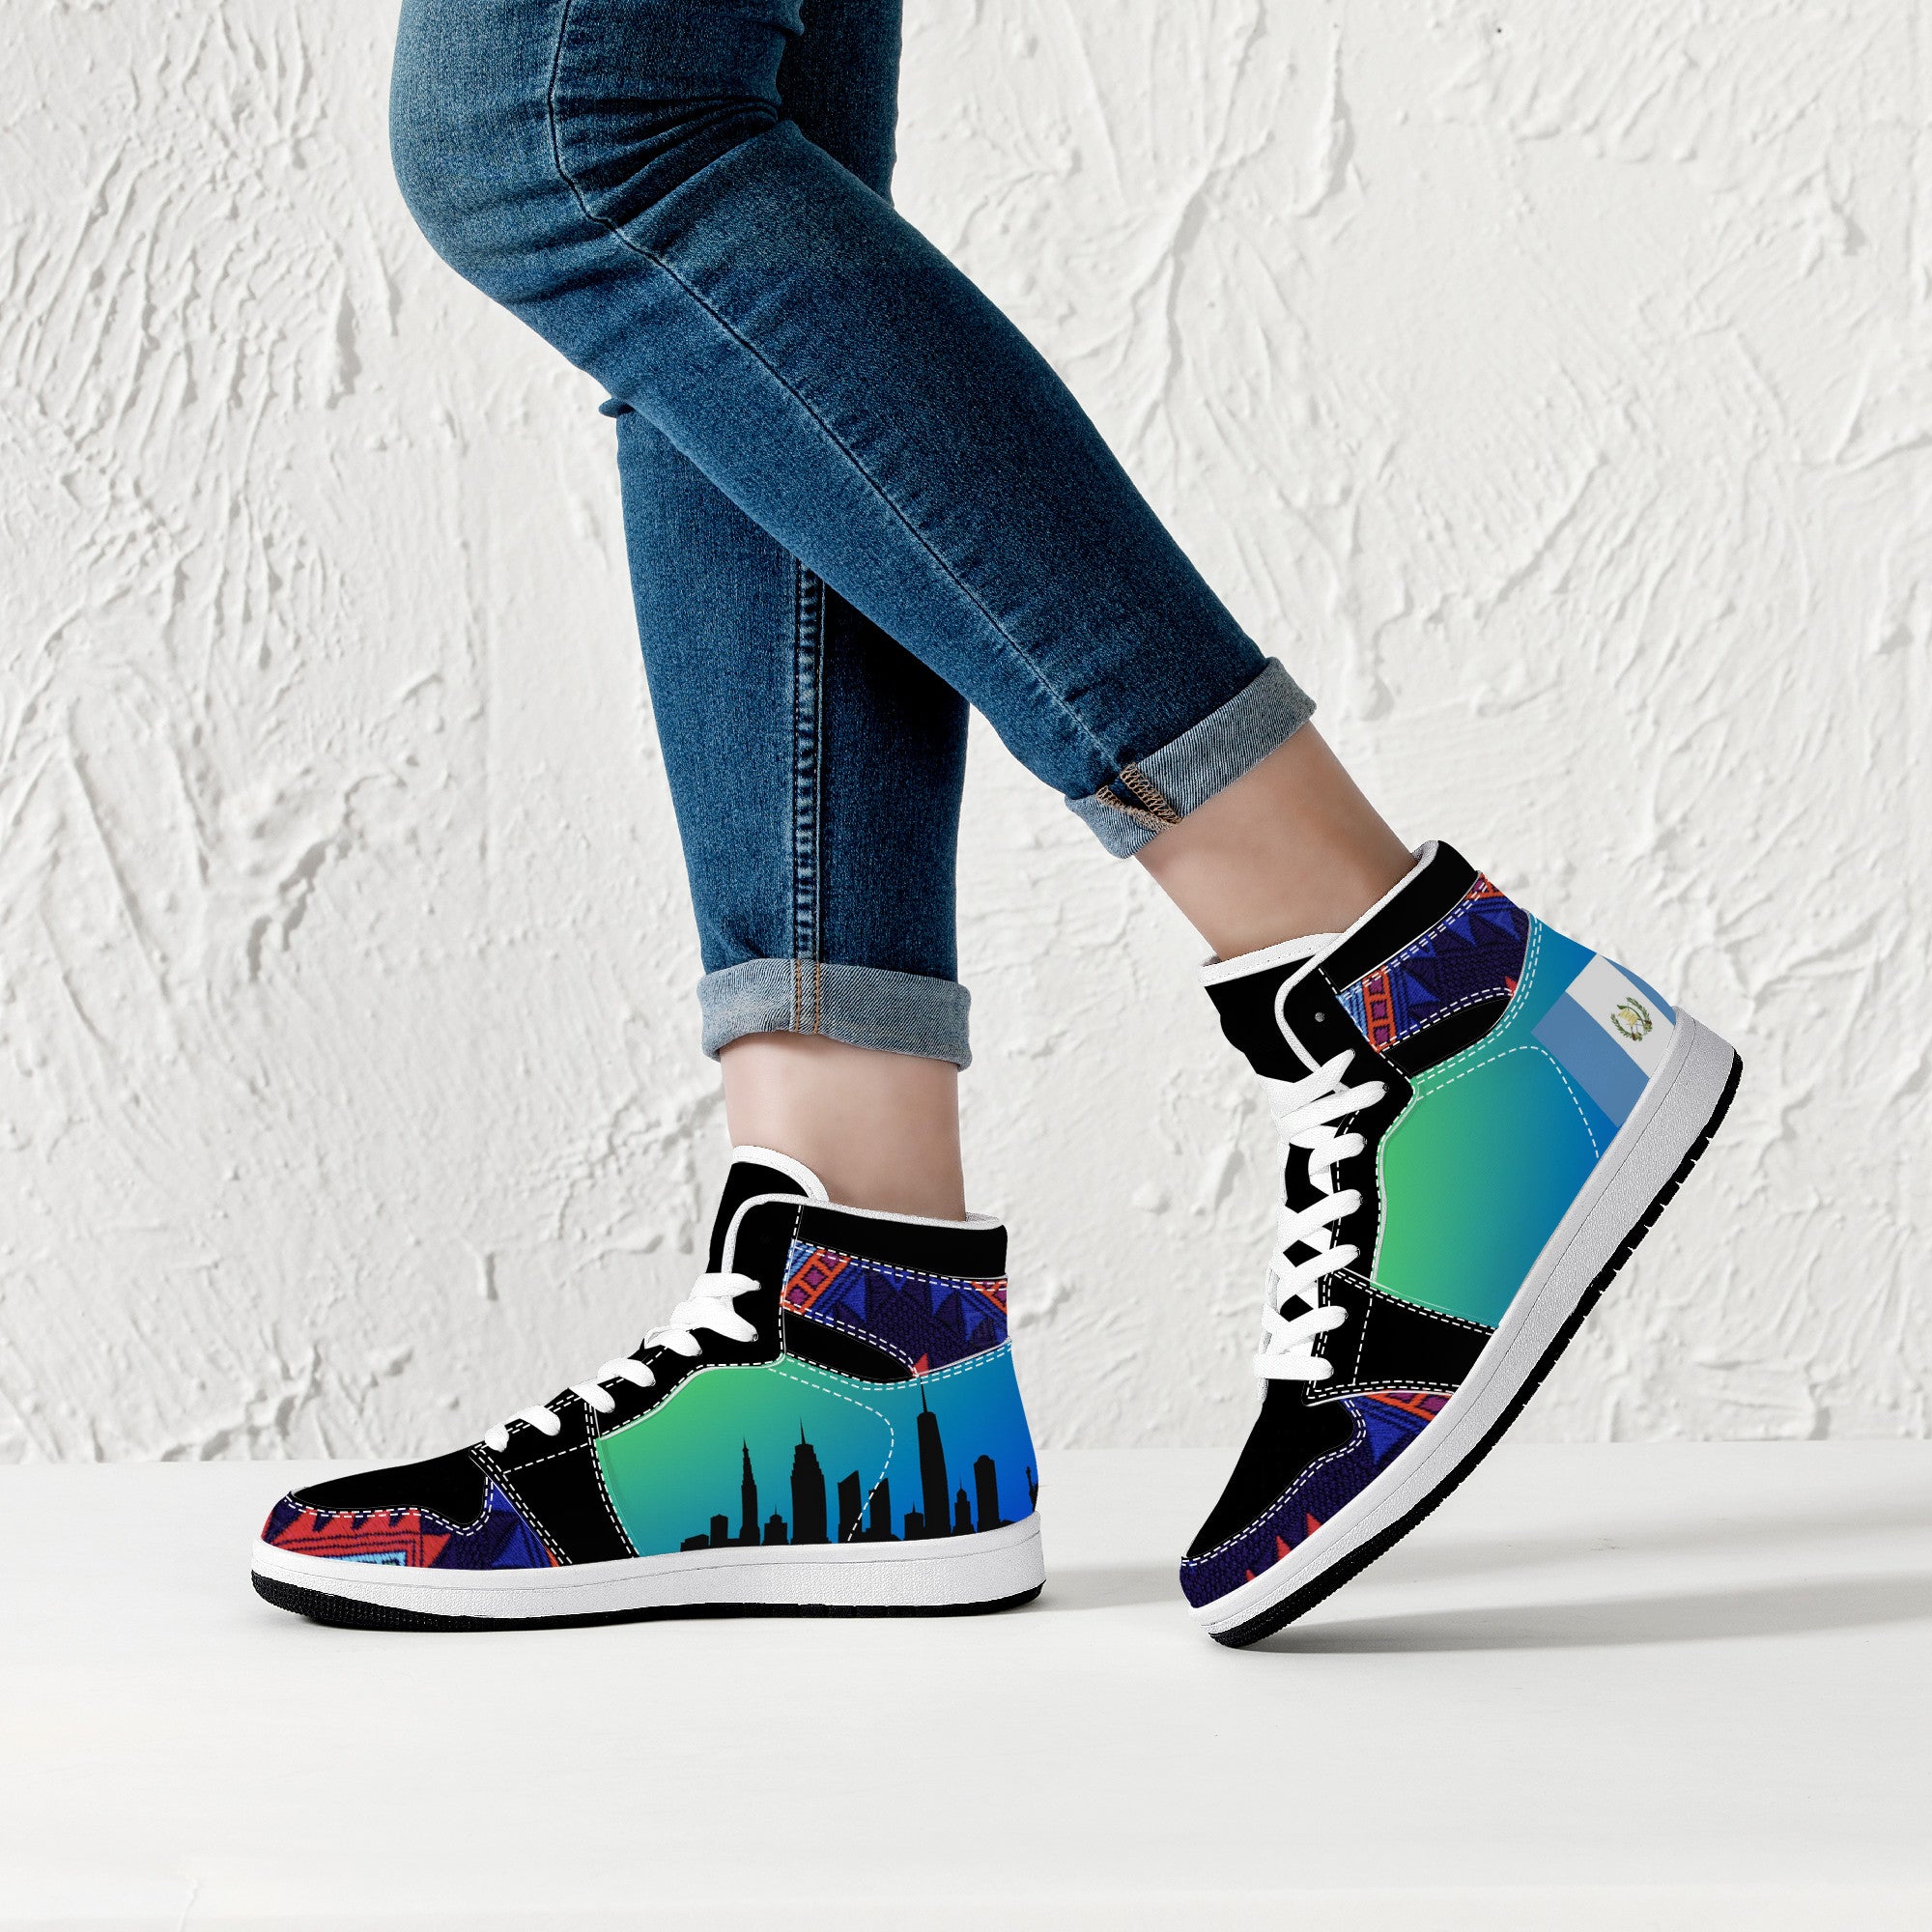 Cool shoes by Jake U | High Top Customized | Shoe Zero